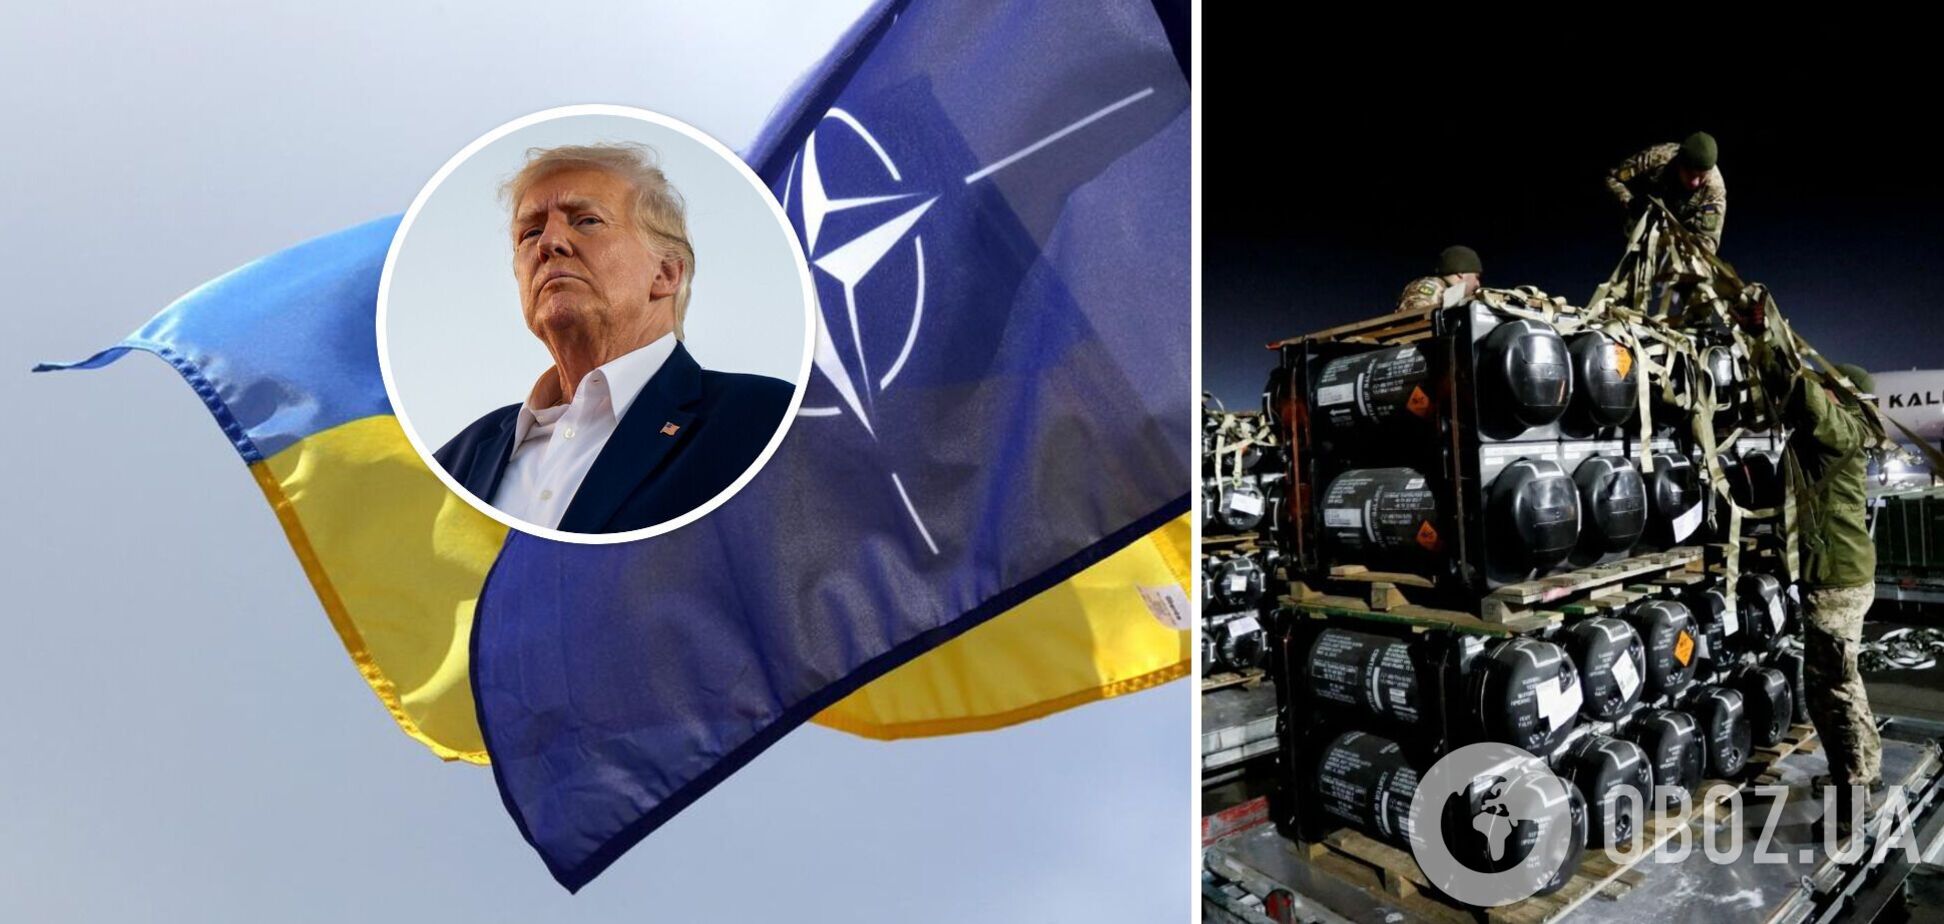 НАТО хоче взяти на себе постачання зброї Україні, щоб переграти Трампа у разі його президентства – Handelsblatt